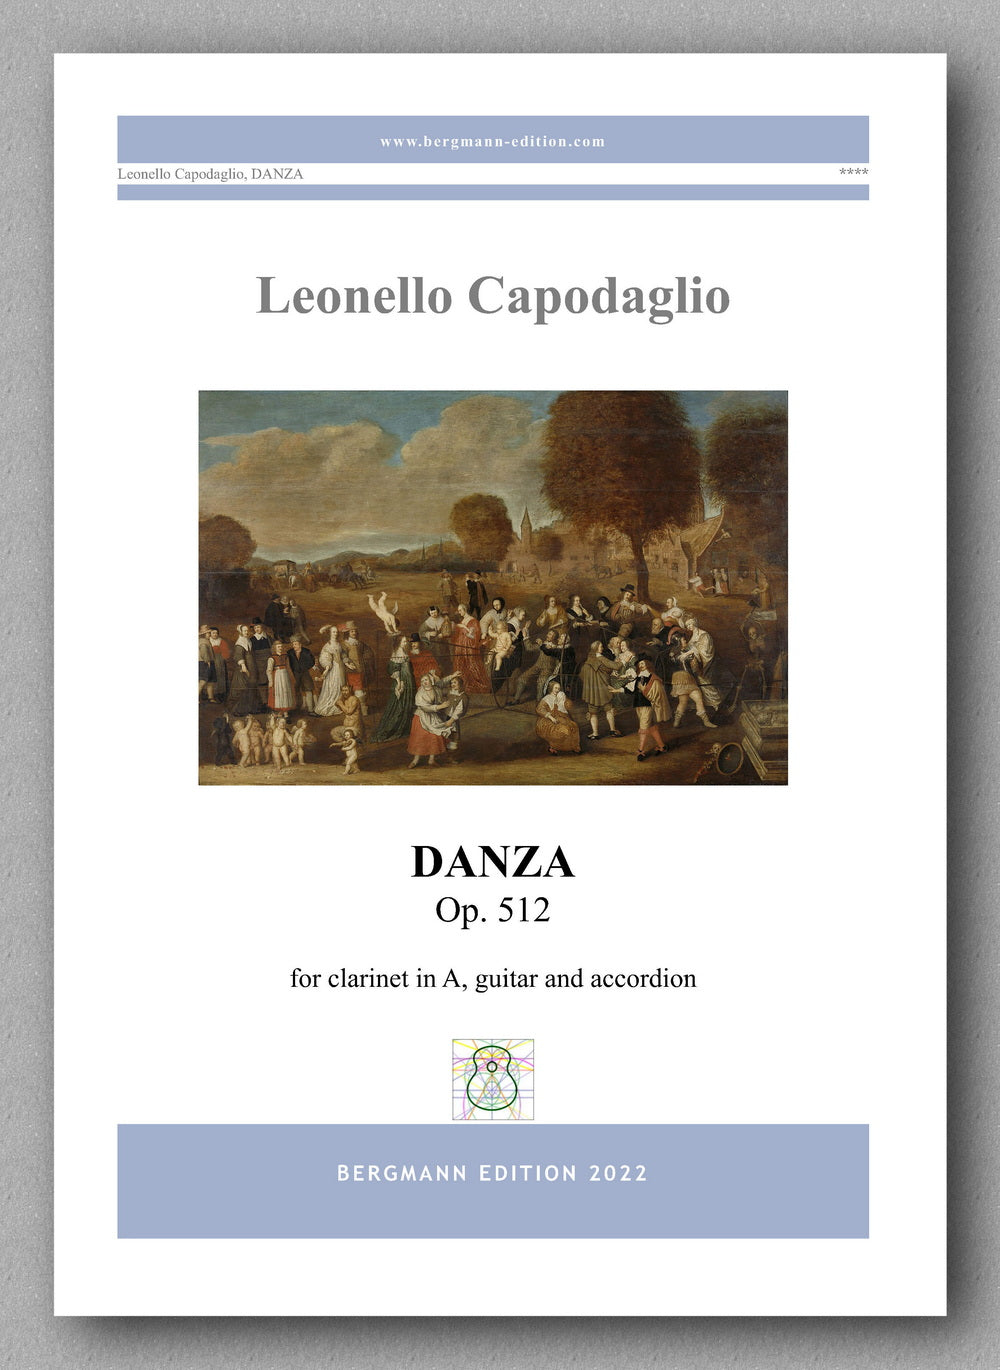 DANZA Op. 512 by  Leonello Capodaglio - preview of the cover